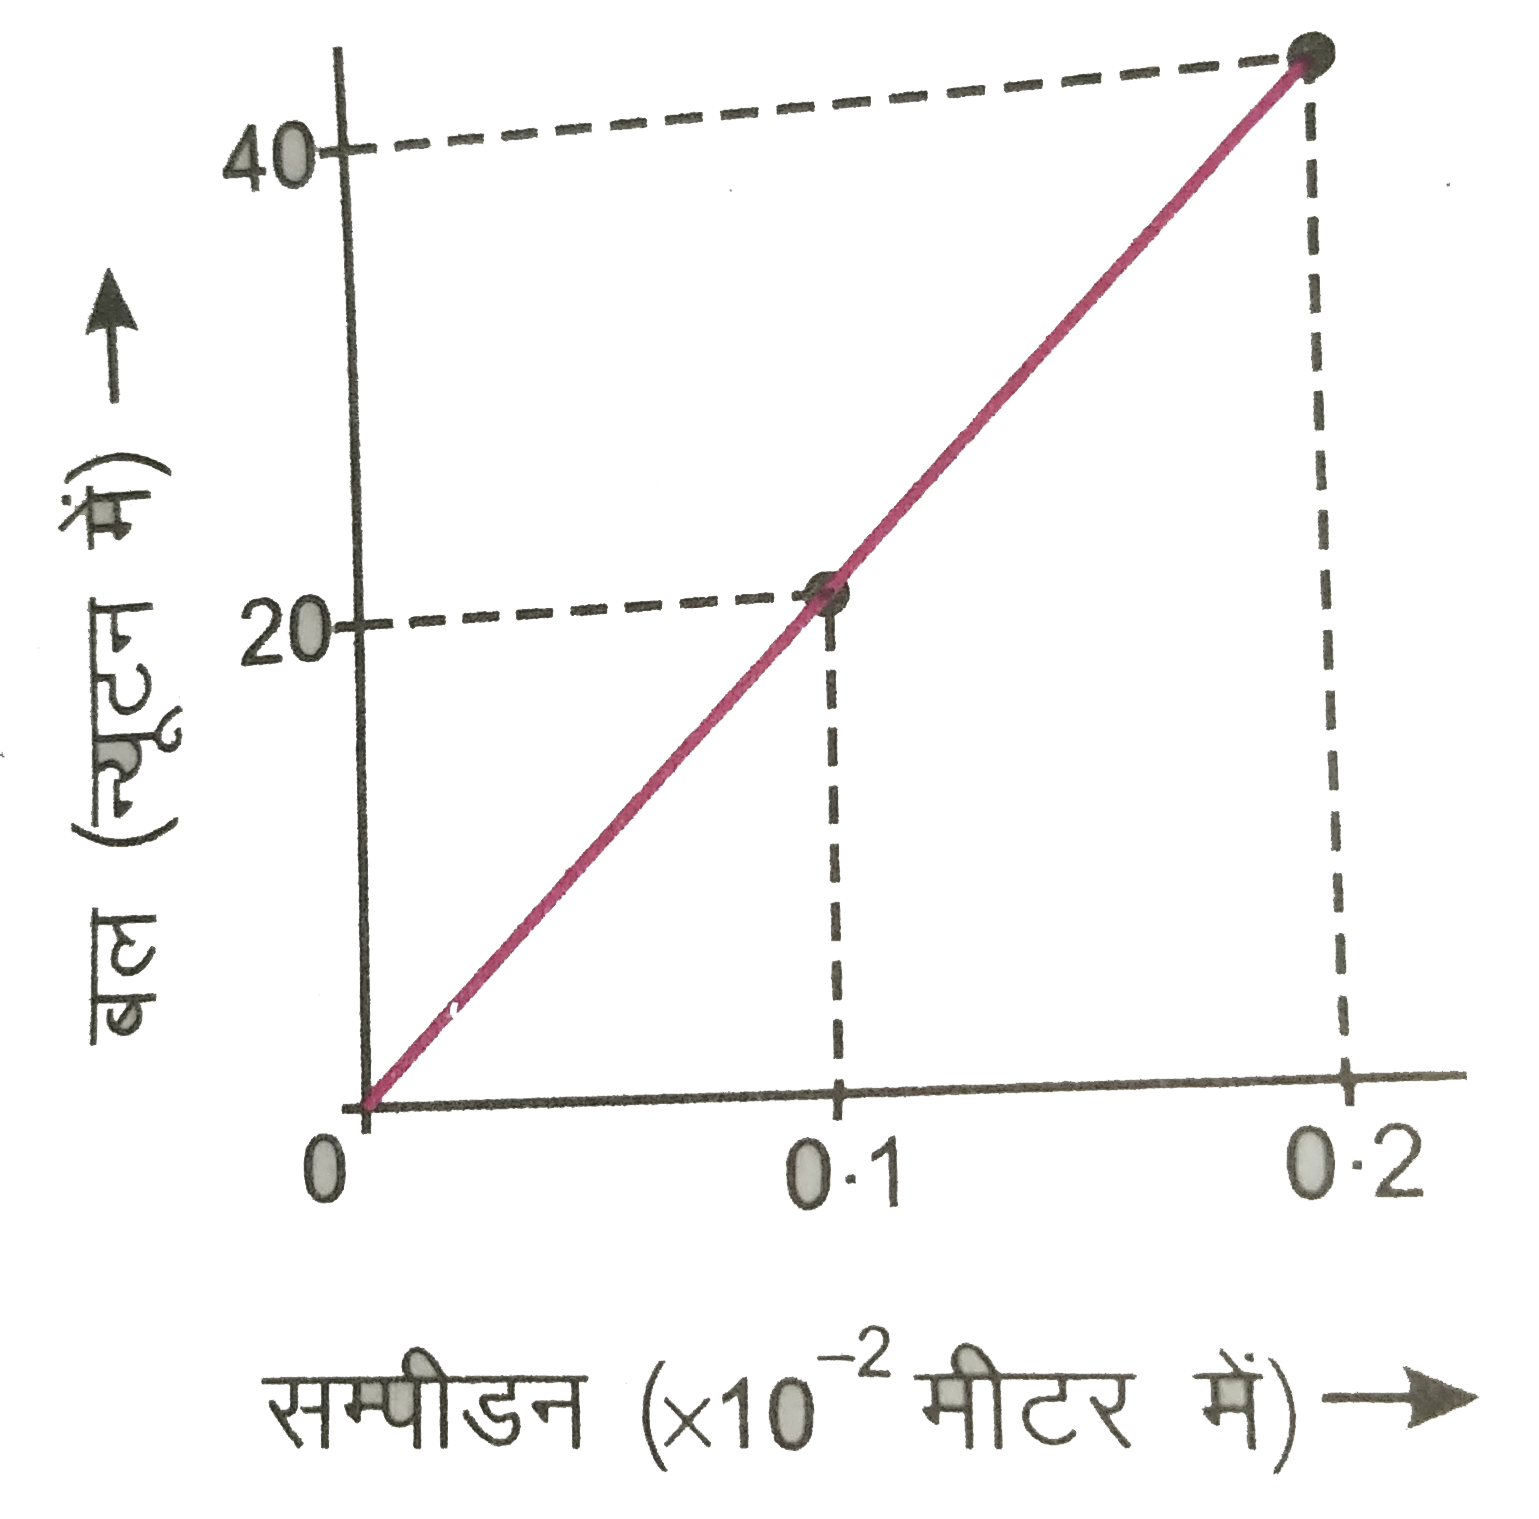 चित्र 7.12 में एक स्प्रिंग के लिए बल - सम्पीडन ग्राफ प्रदर्शित है| गणना कीजिए : (i ) स्प्रिंग का बल नियतांक, (ii ) 0.2xx10^(-2) मीटर सम्पीडन उत्पन्न करने में स्प्रिंग की स्थितिज ऊर्जा में वृद्धि, (iii ) यदि स्प्रिंग को एक गतिशील पिण्ड से संघट्ट कराकर सम्पीडित किया जाए, तो 0.1xx10^(-2) मीटर सम्पीडन कराने के लिए पिण्ड की आवश्यक न्यूतनम गतिज ऊर्जा |